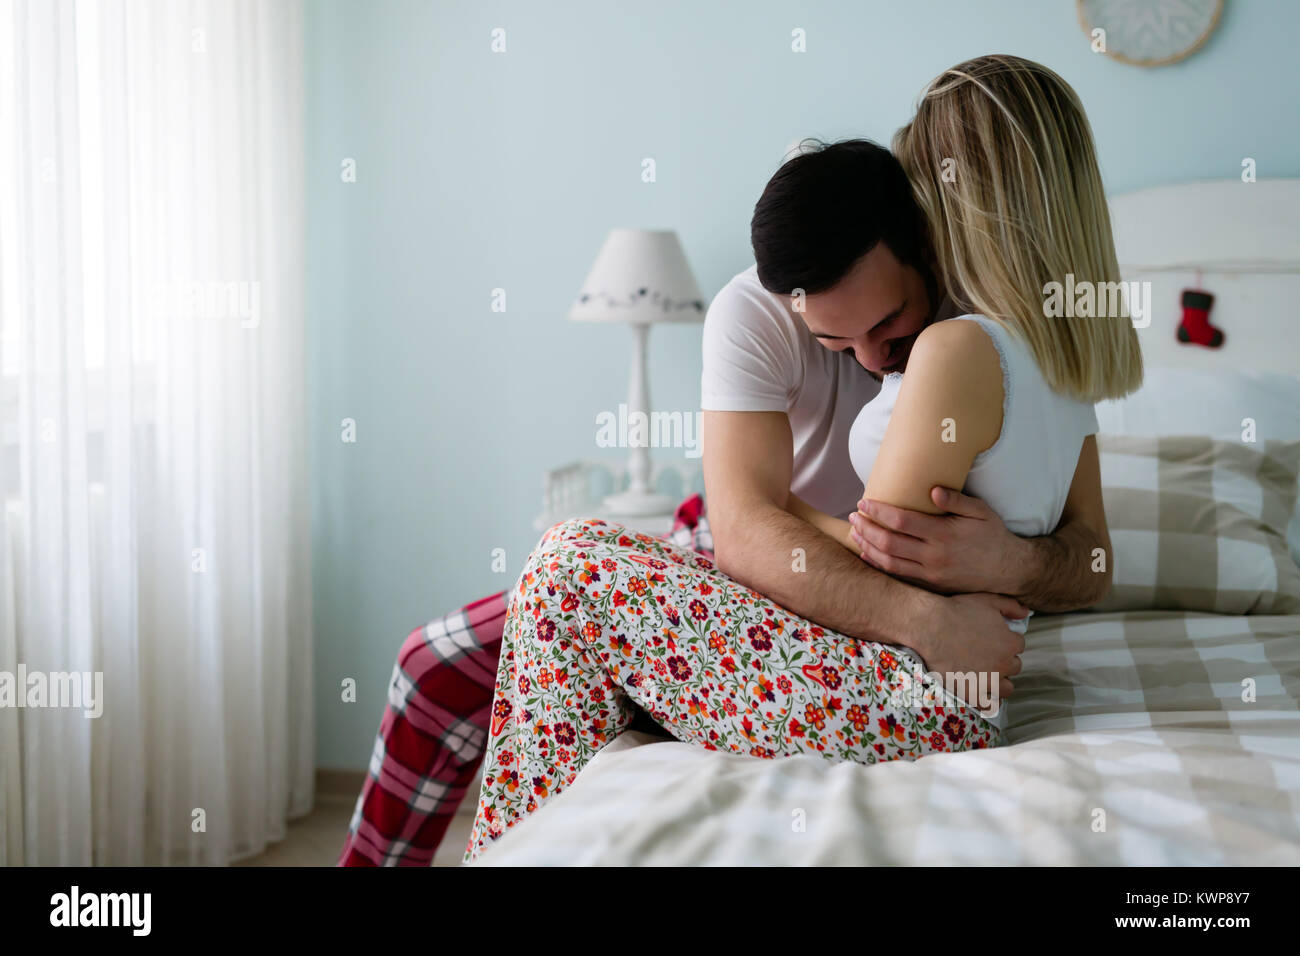 Junge attraktive Paar romantische Zeit im Bett Stockfoto